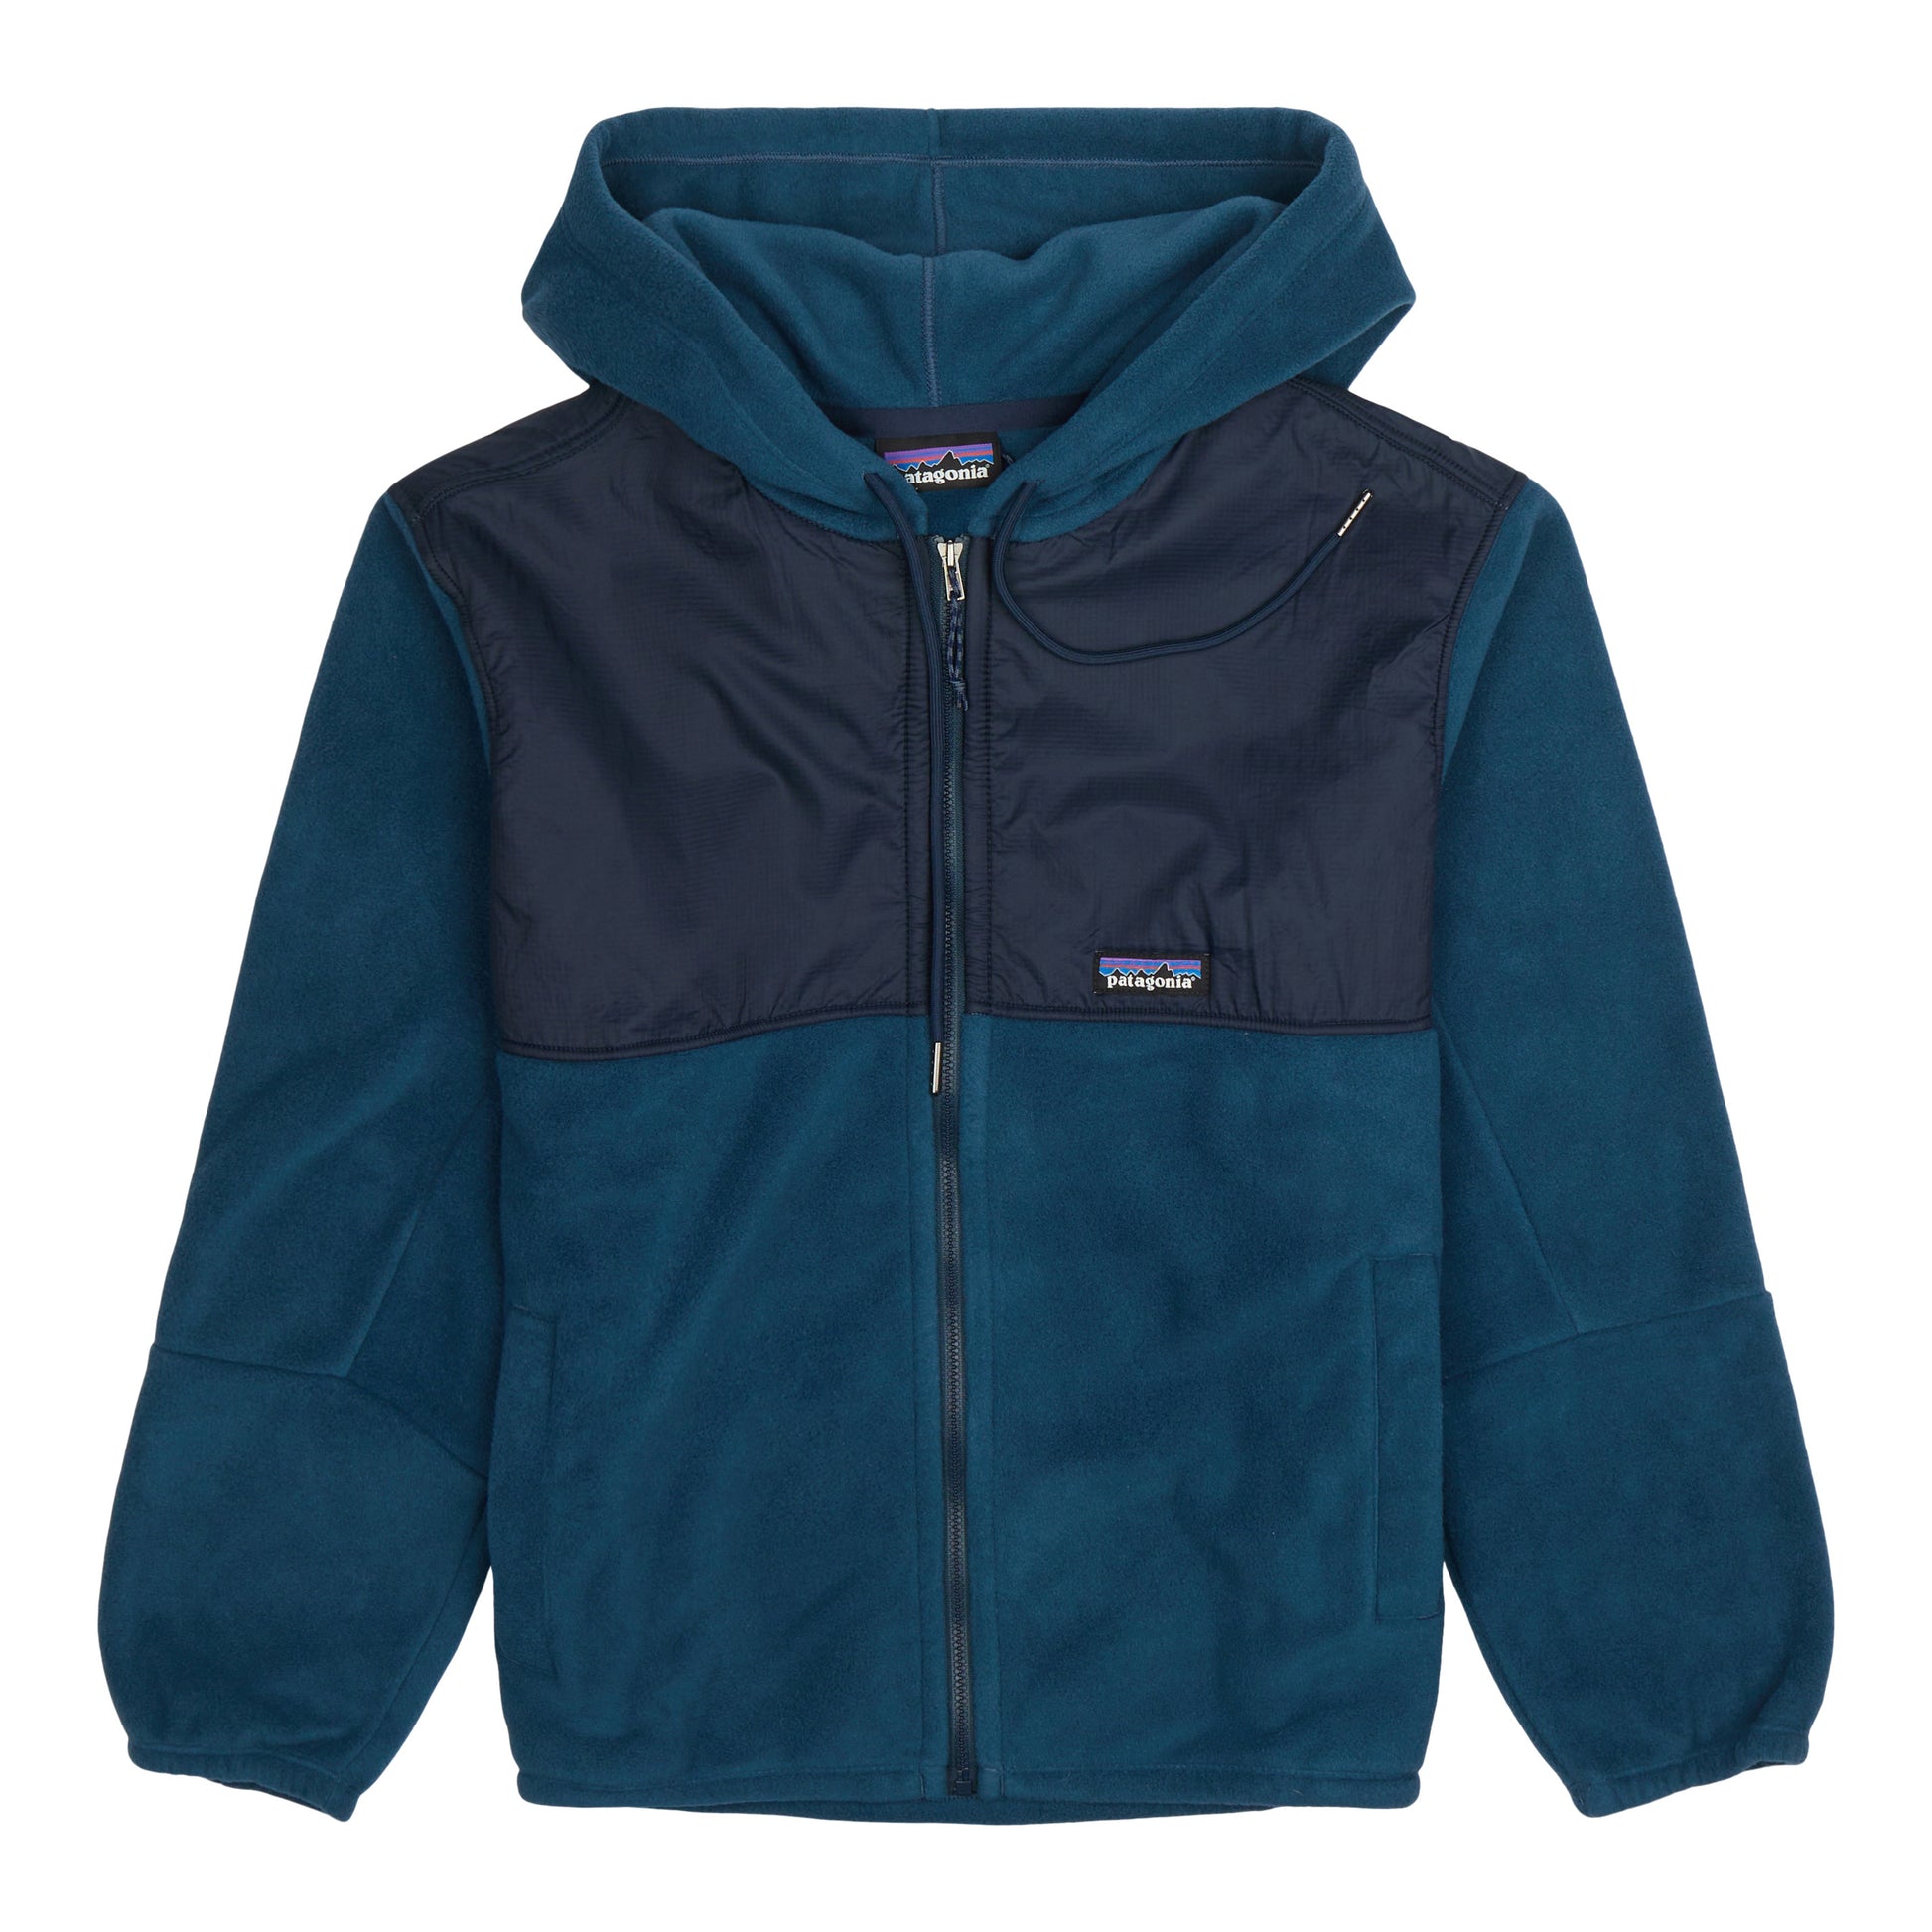 Patagonia Micro D Snap-T Hooded Full Zip Fleece Sweatshirt - Kid's